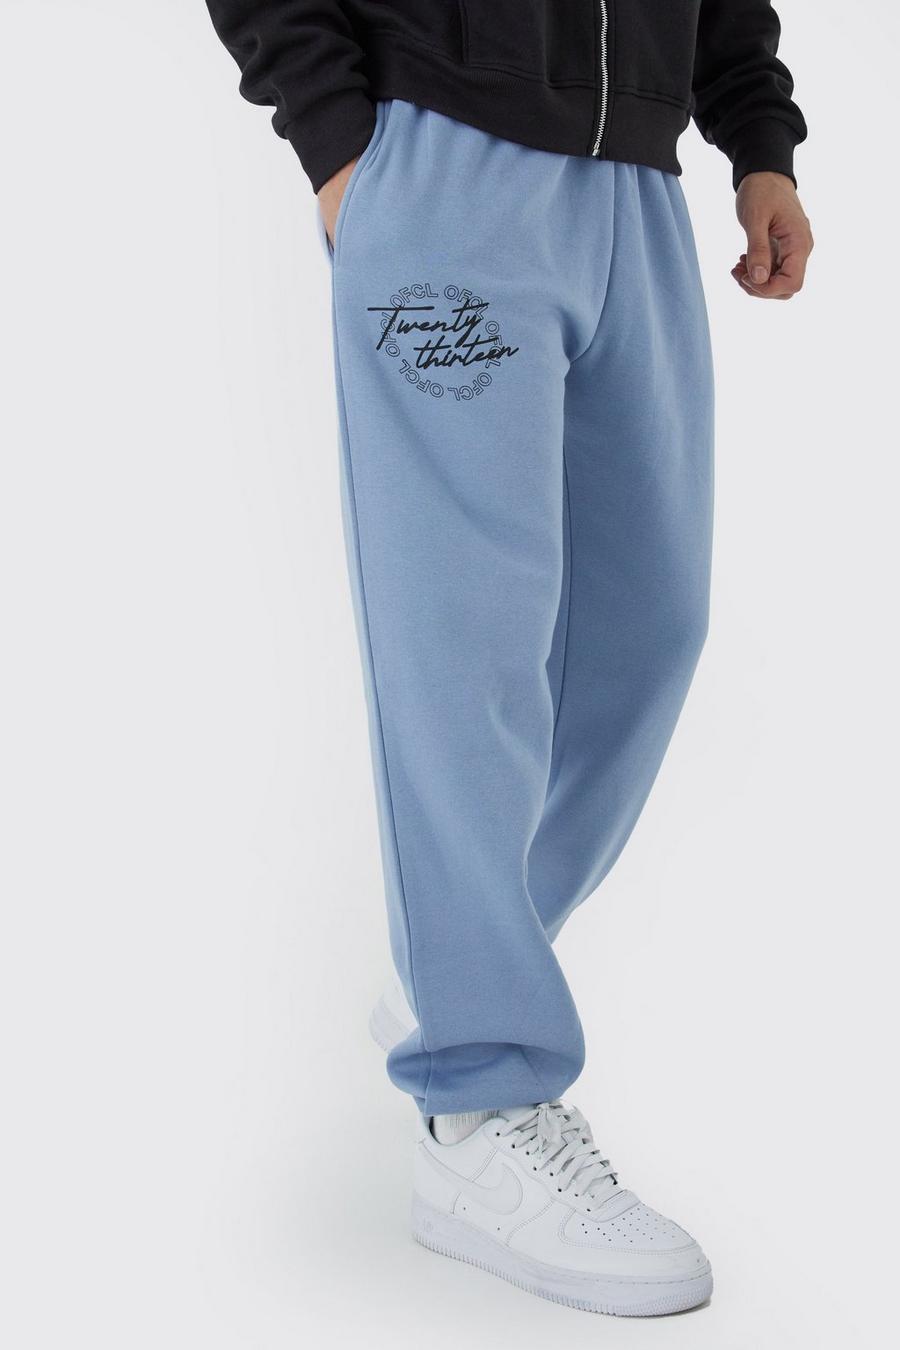 Pantaloni tuta Tall Ofcl con grafica di testo, Dusty blue